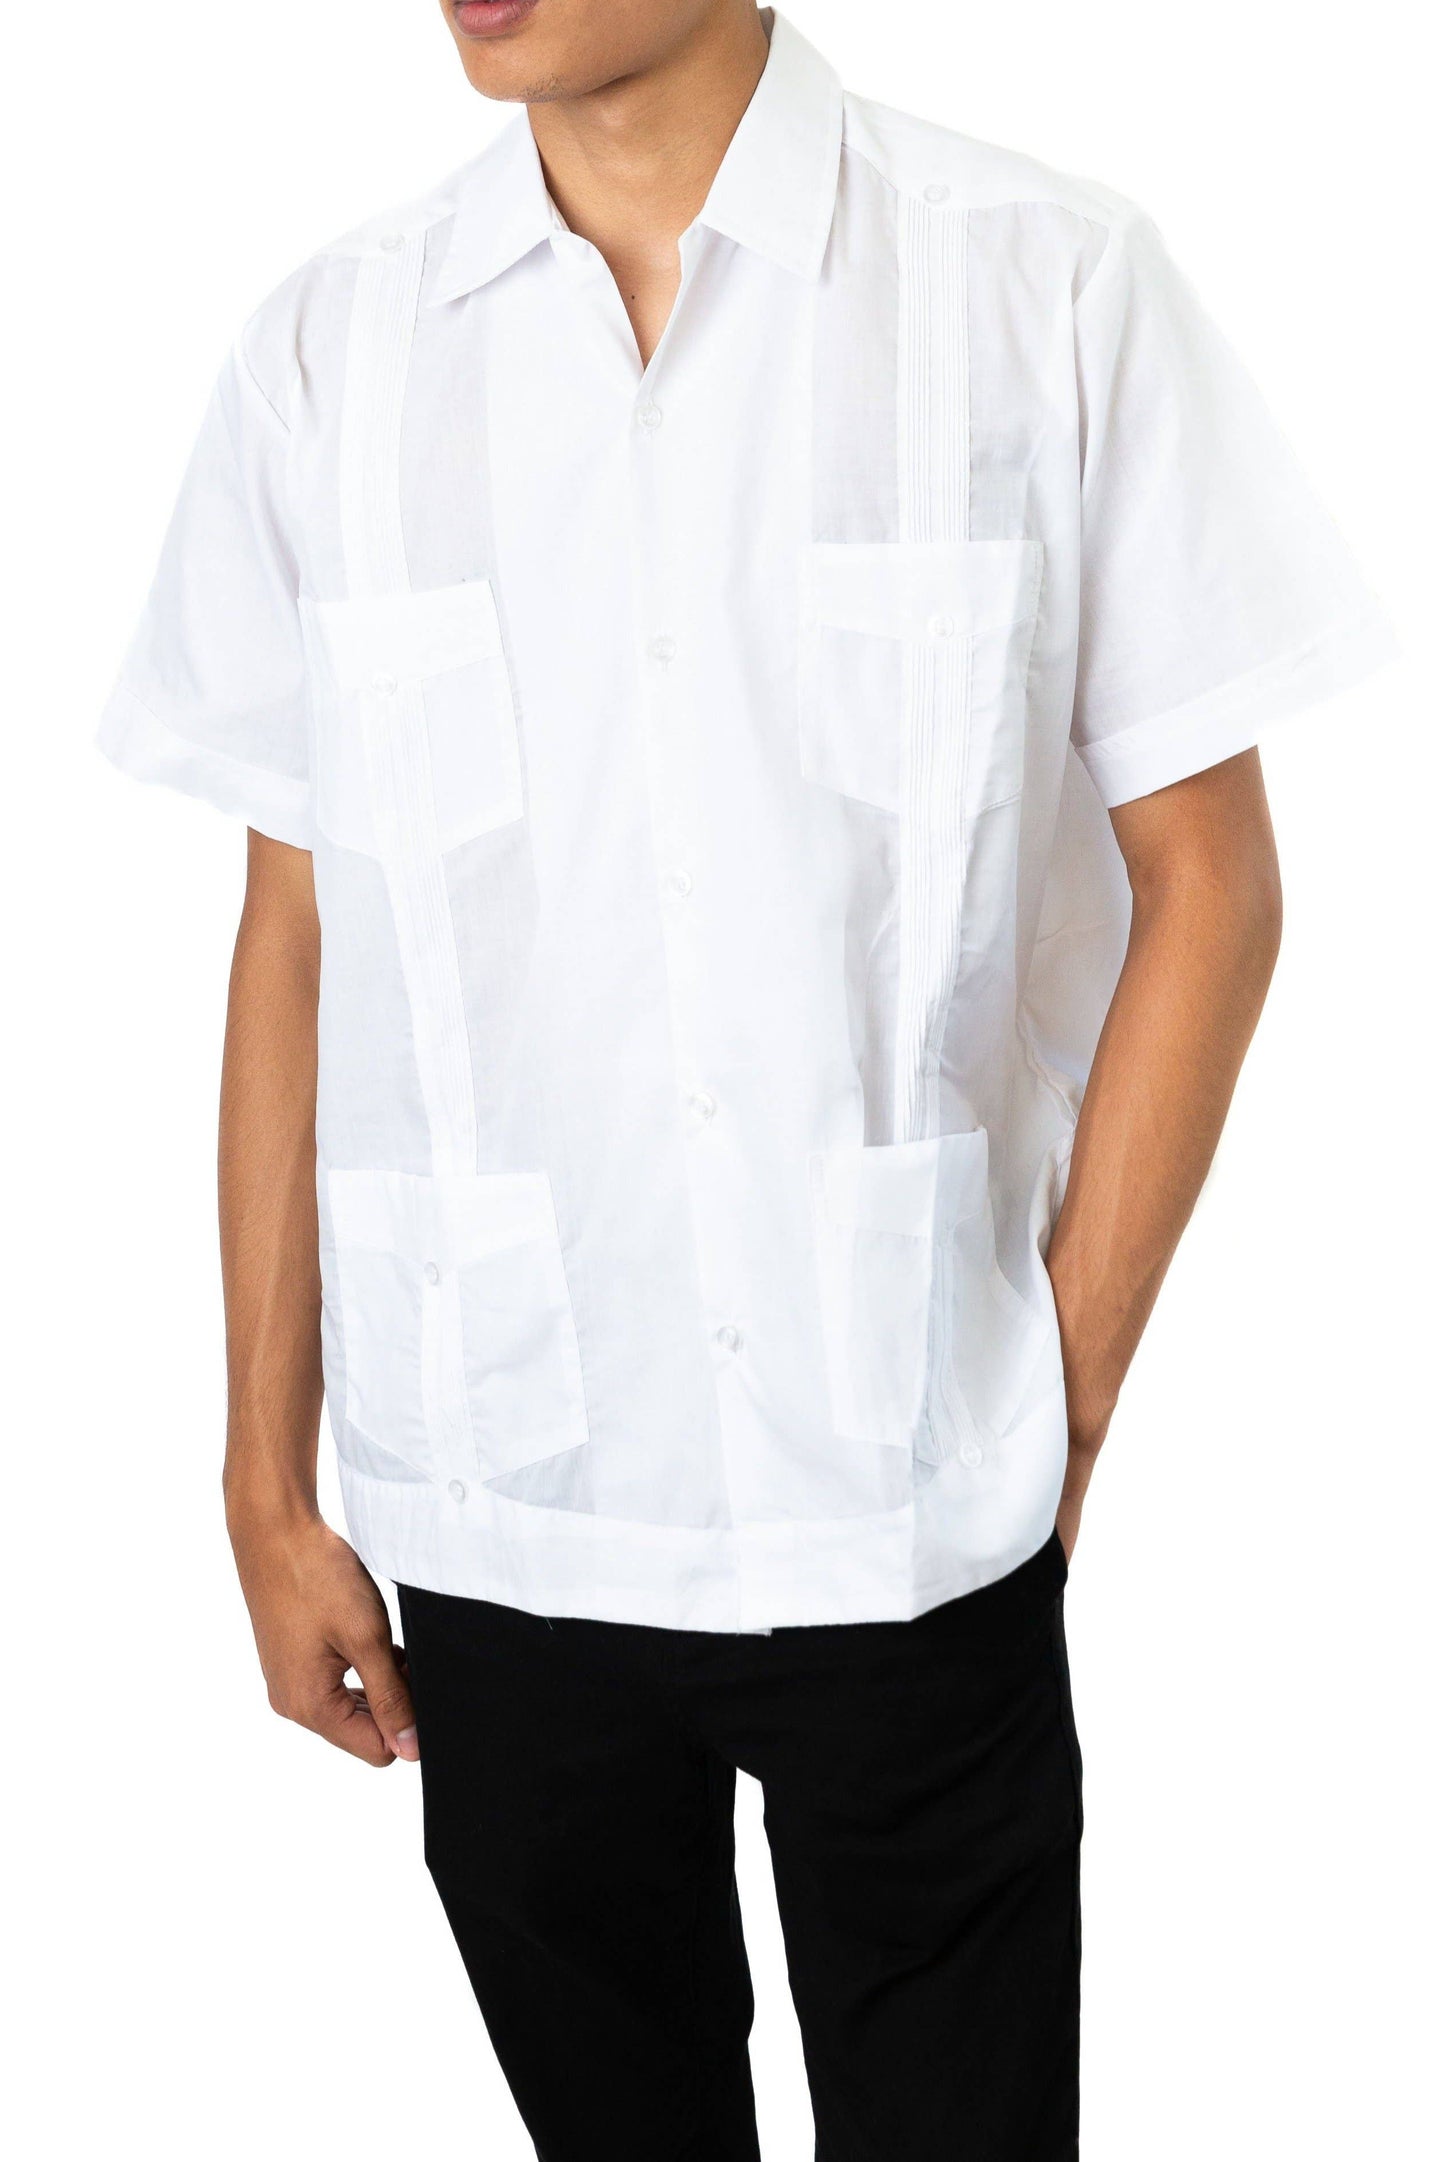 SIDREY Guayabera Classic Shirt - White